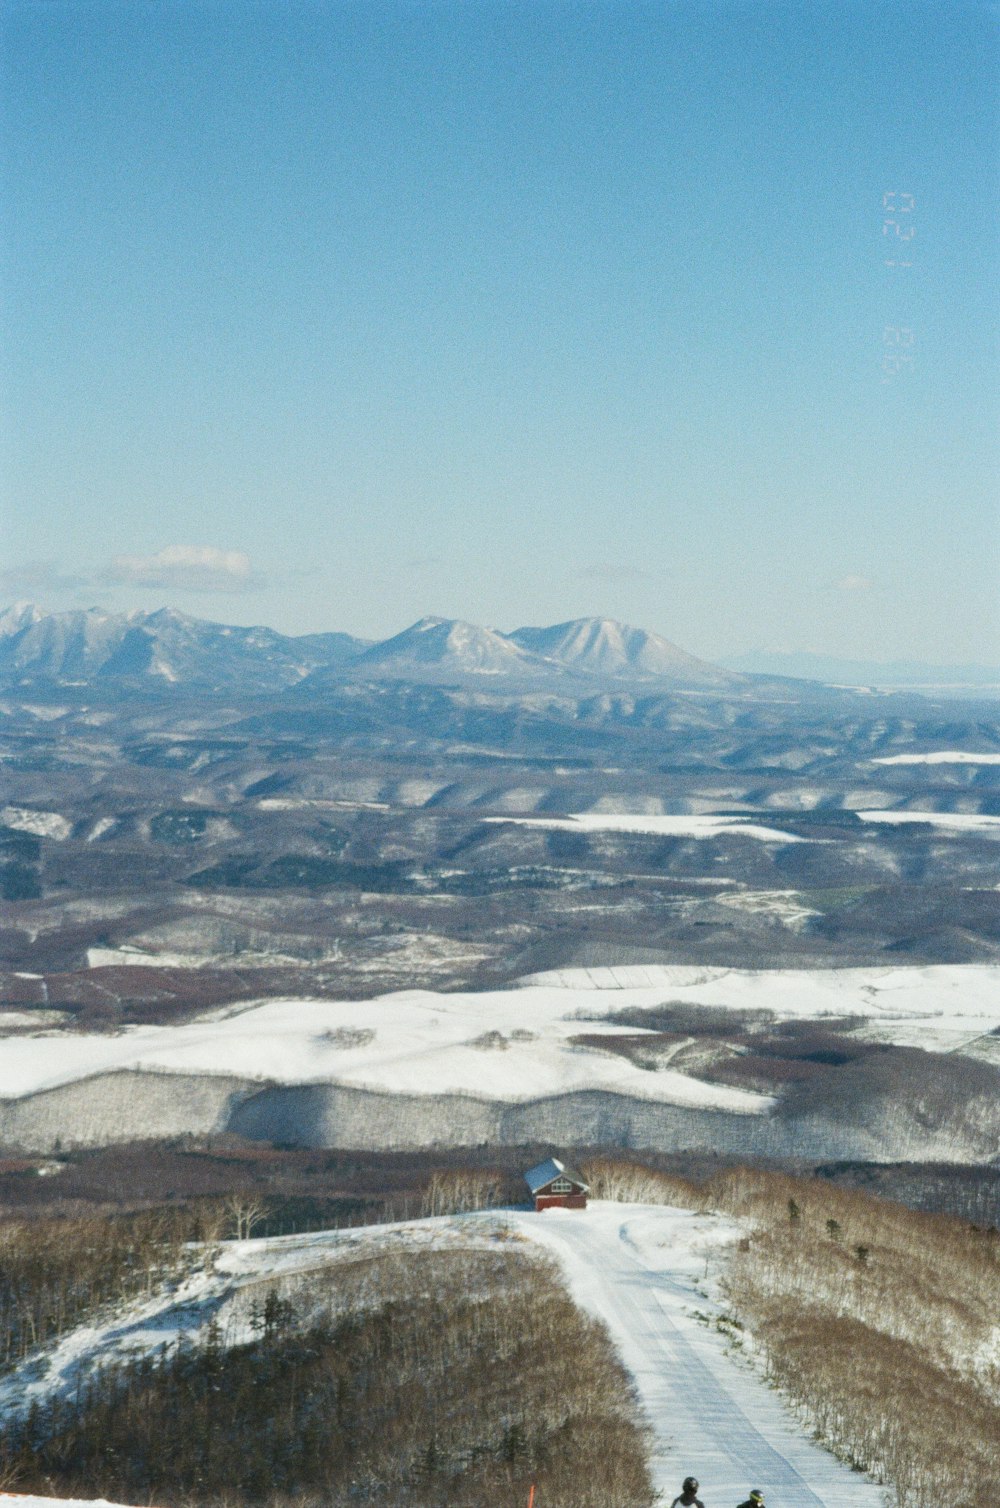 Un par de personas montando esquís en la cima de una ladera cubierta de nieve